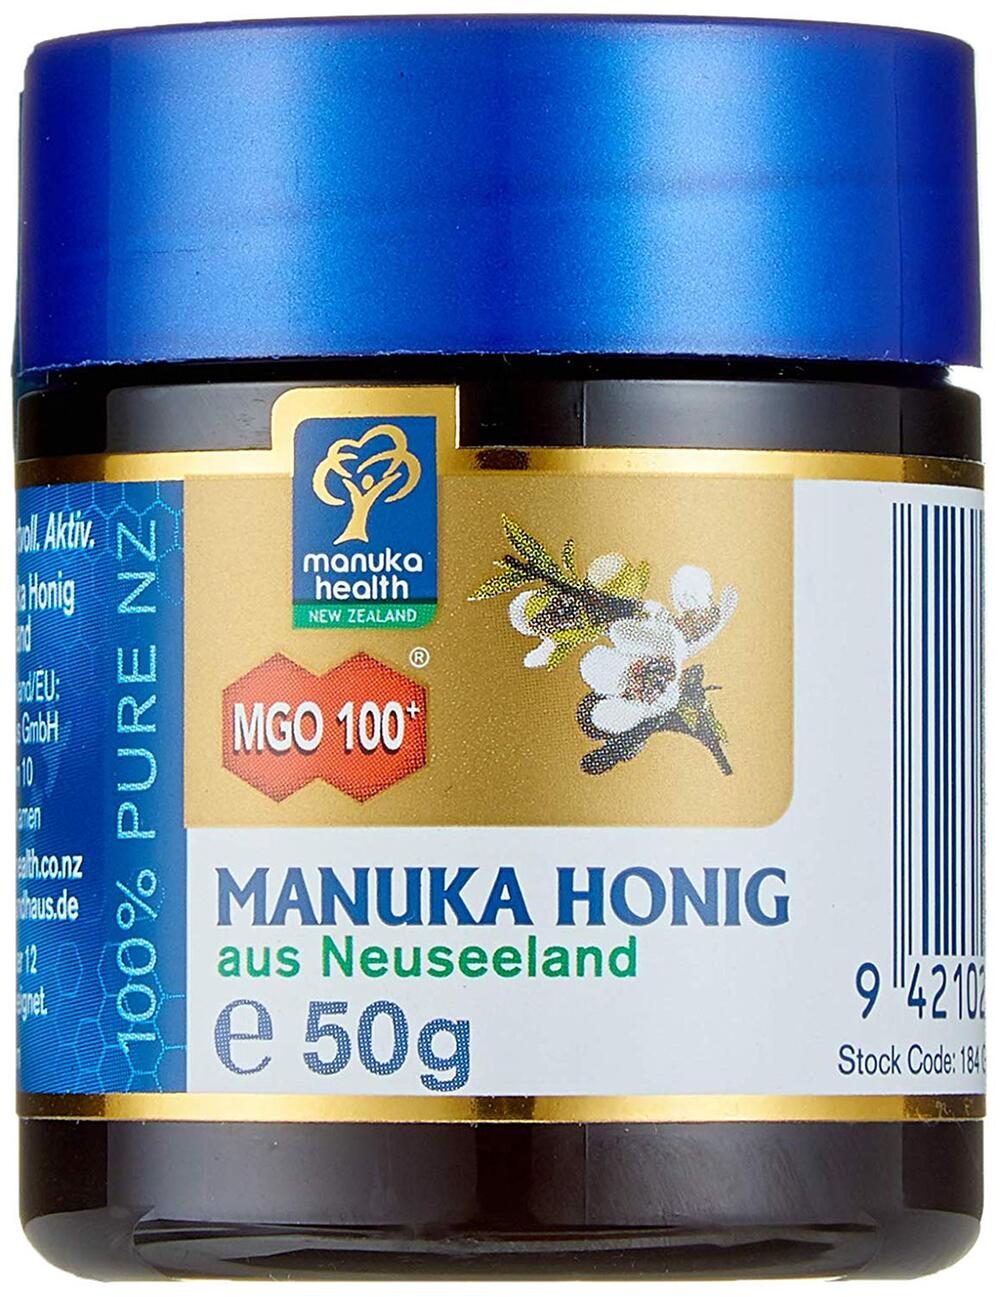 Manuka-Honig zur Stärkung.